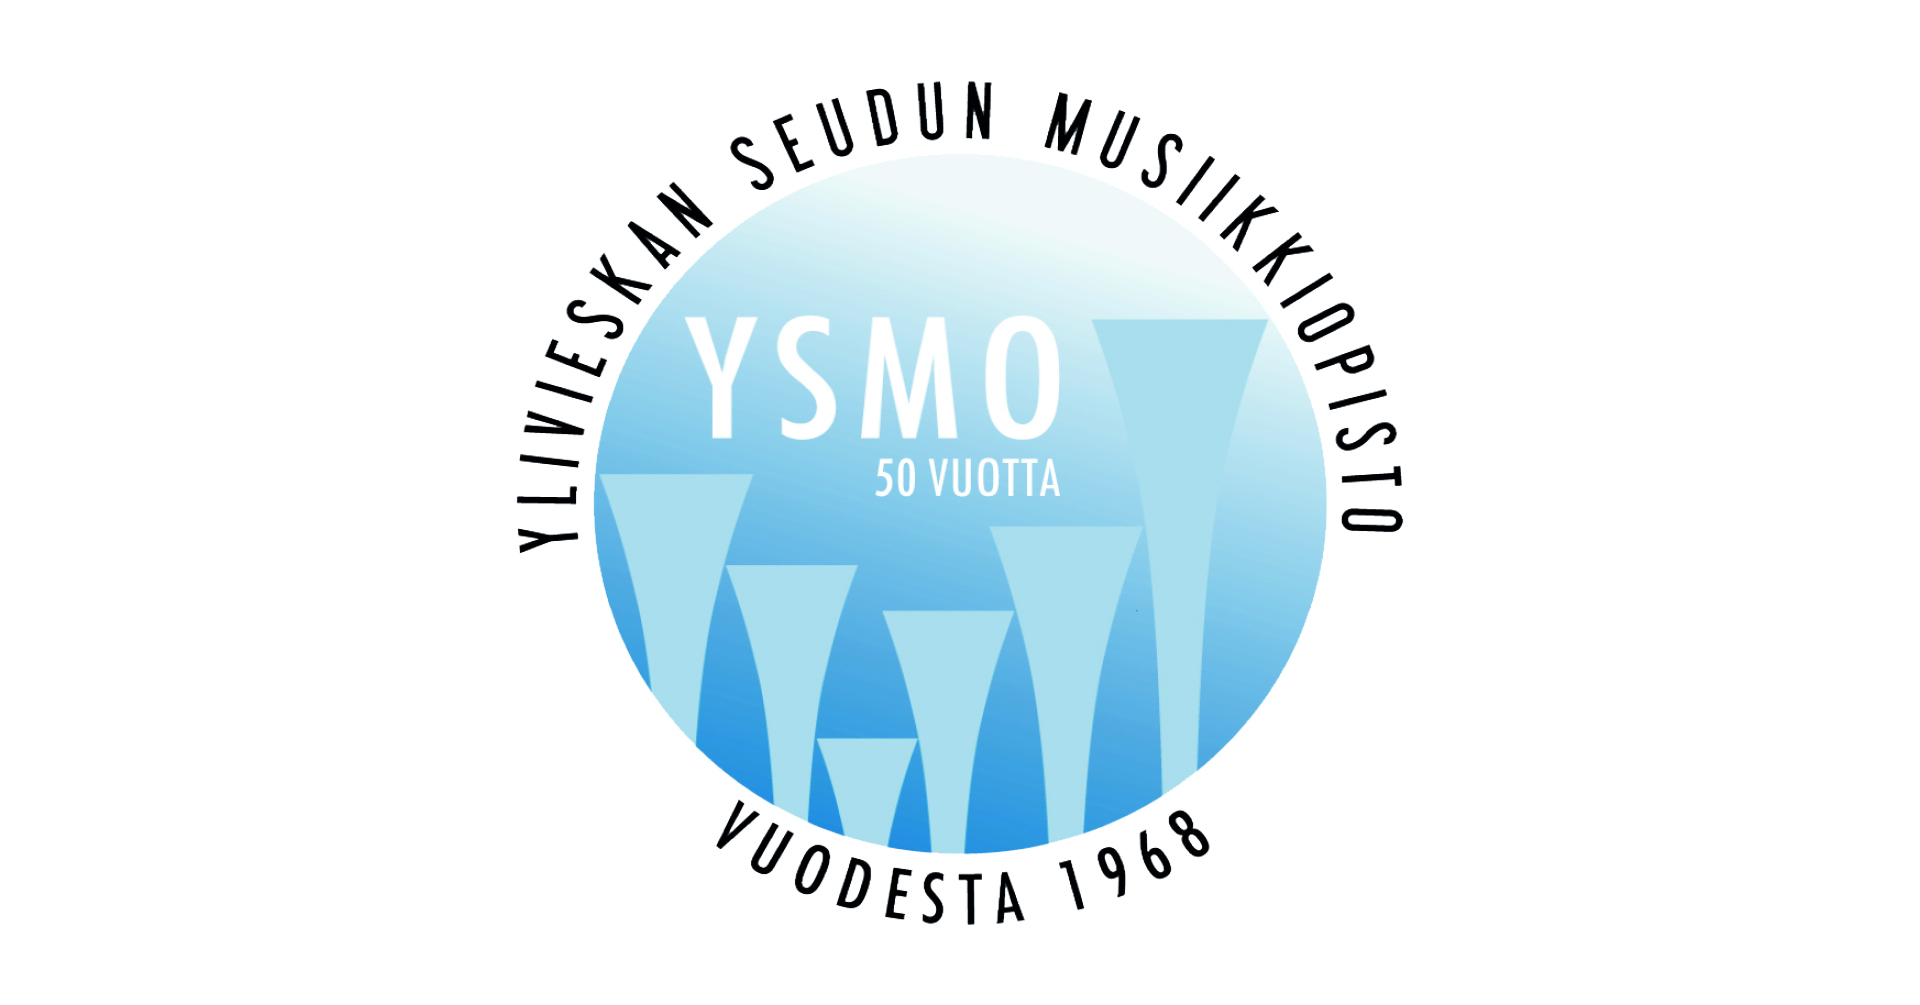 YSMO oppilaskonsertti -  Soundeja ja synkooppeja - rytmimusiikin konsertti